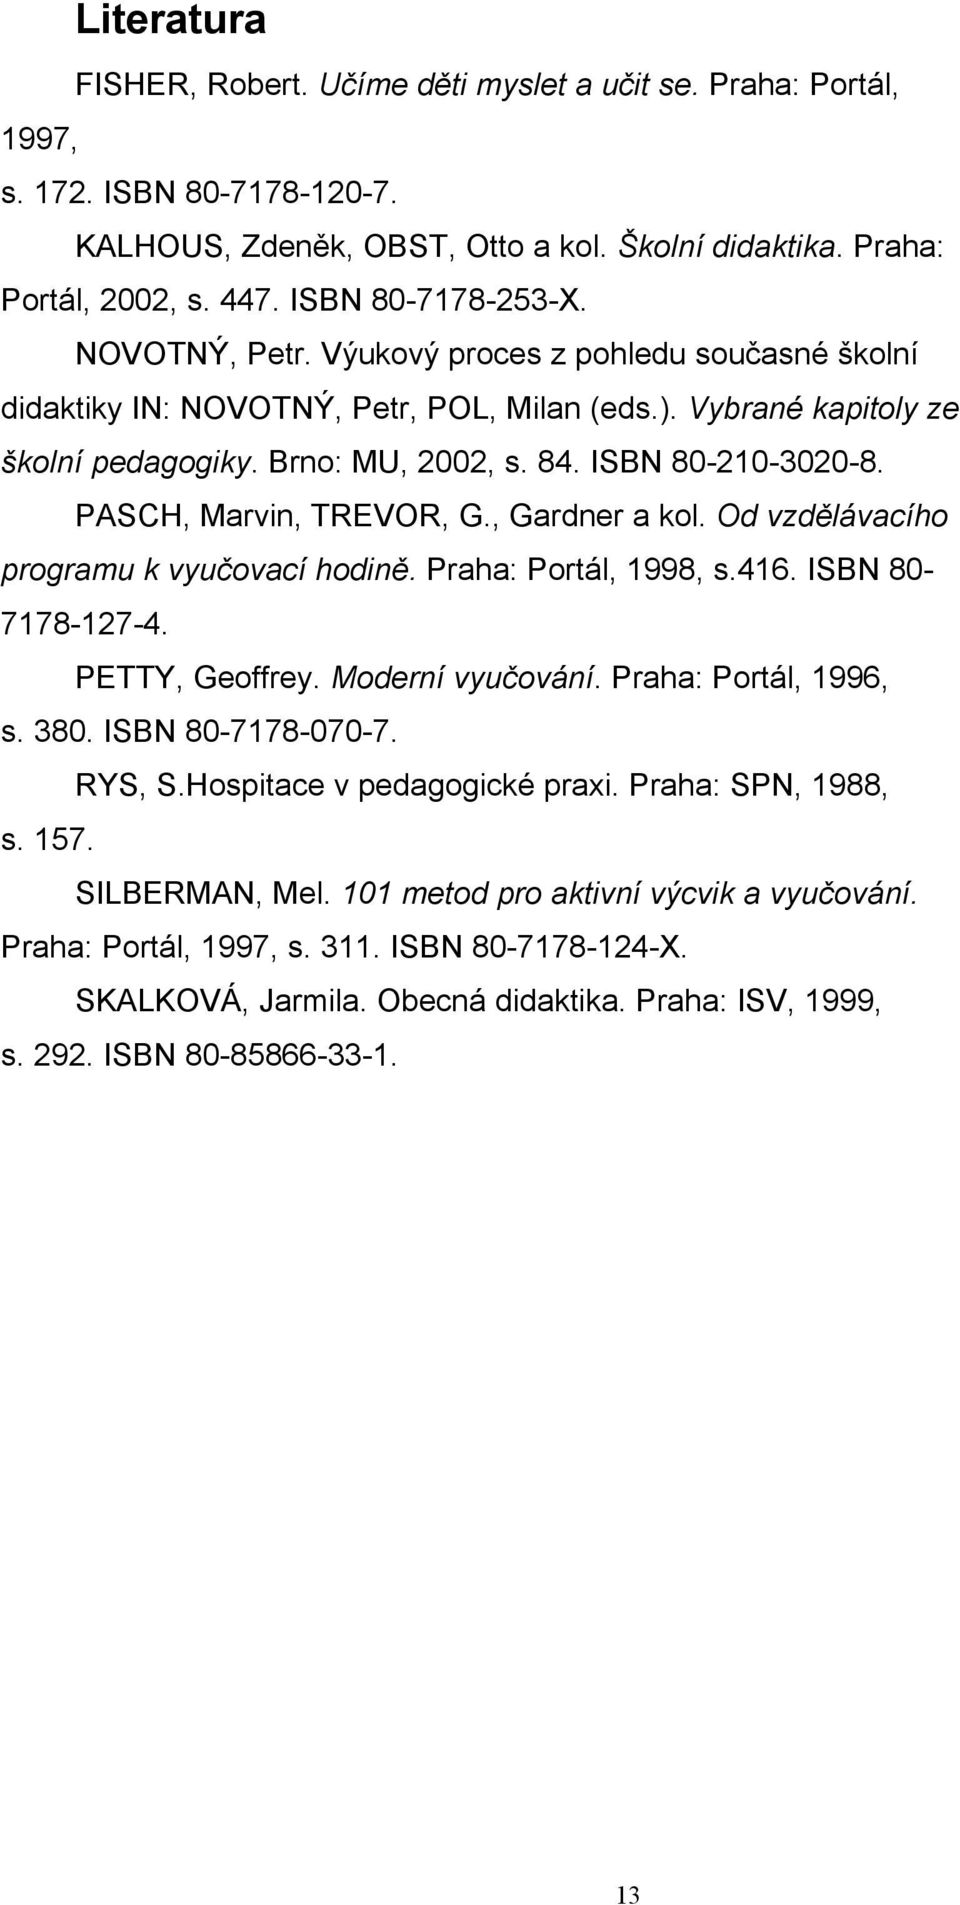 ISBN 80-210-3020-8. PASCH, Marvin, TREVOR, G., Gardner a kol. Od vzdělávacího programu k vyučovací hodině. Praha: Portál, 1998, s.416. ISBN 80-7178-127-4. PETTY, Geoffrey. Moderní vyučování.